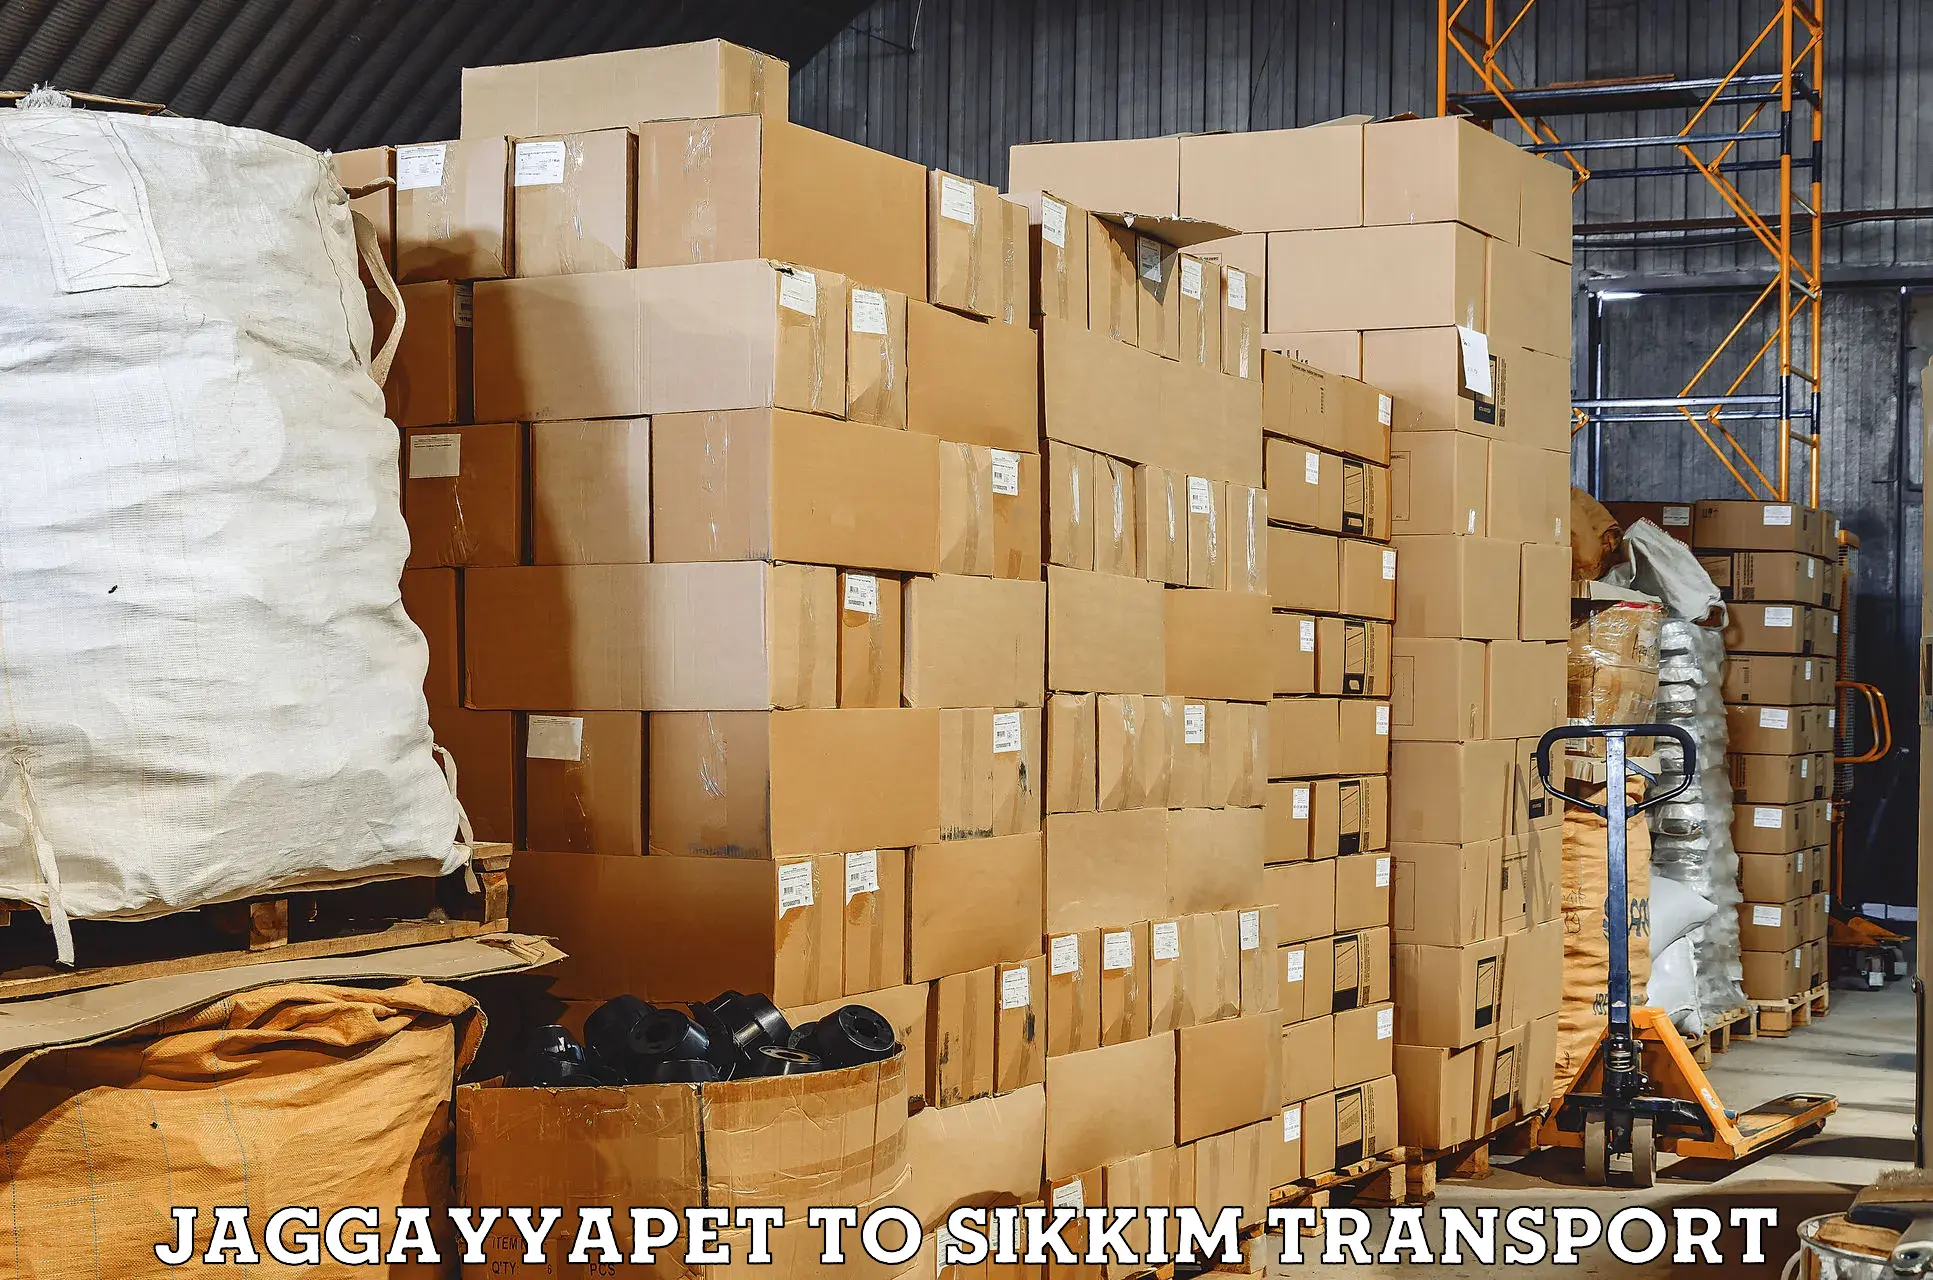 Shipping partner Jaggayyapet to North Sikkim